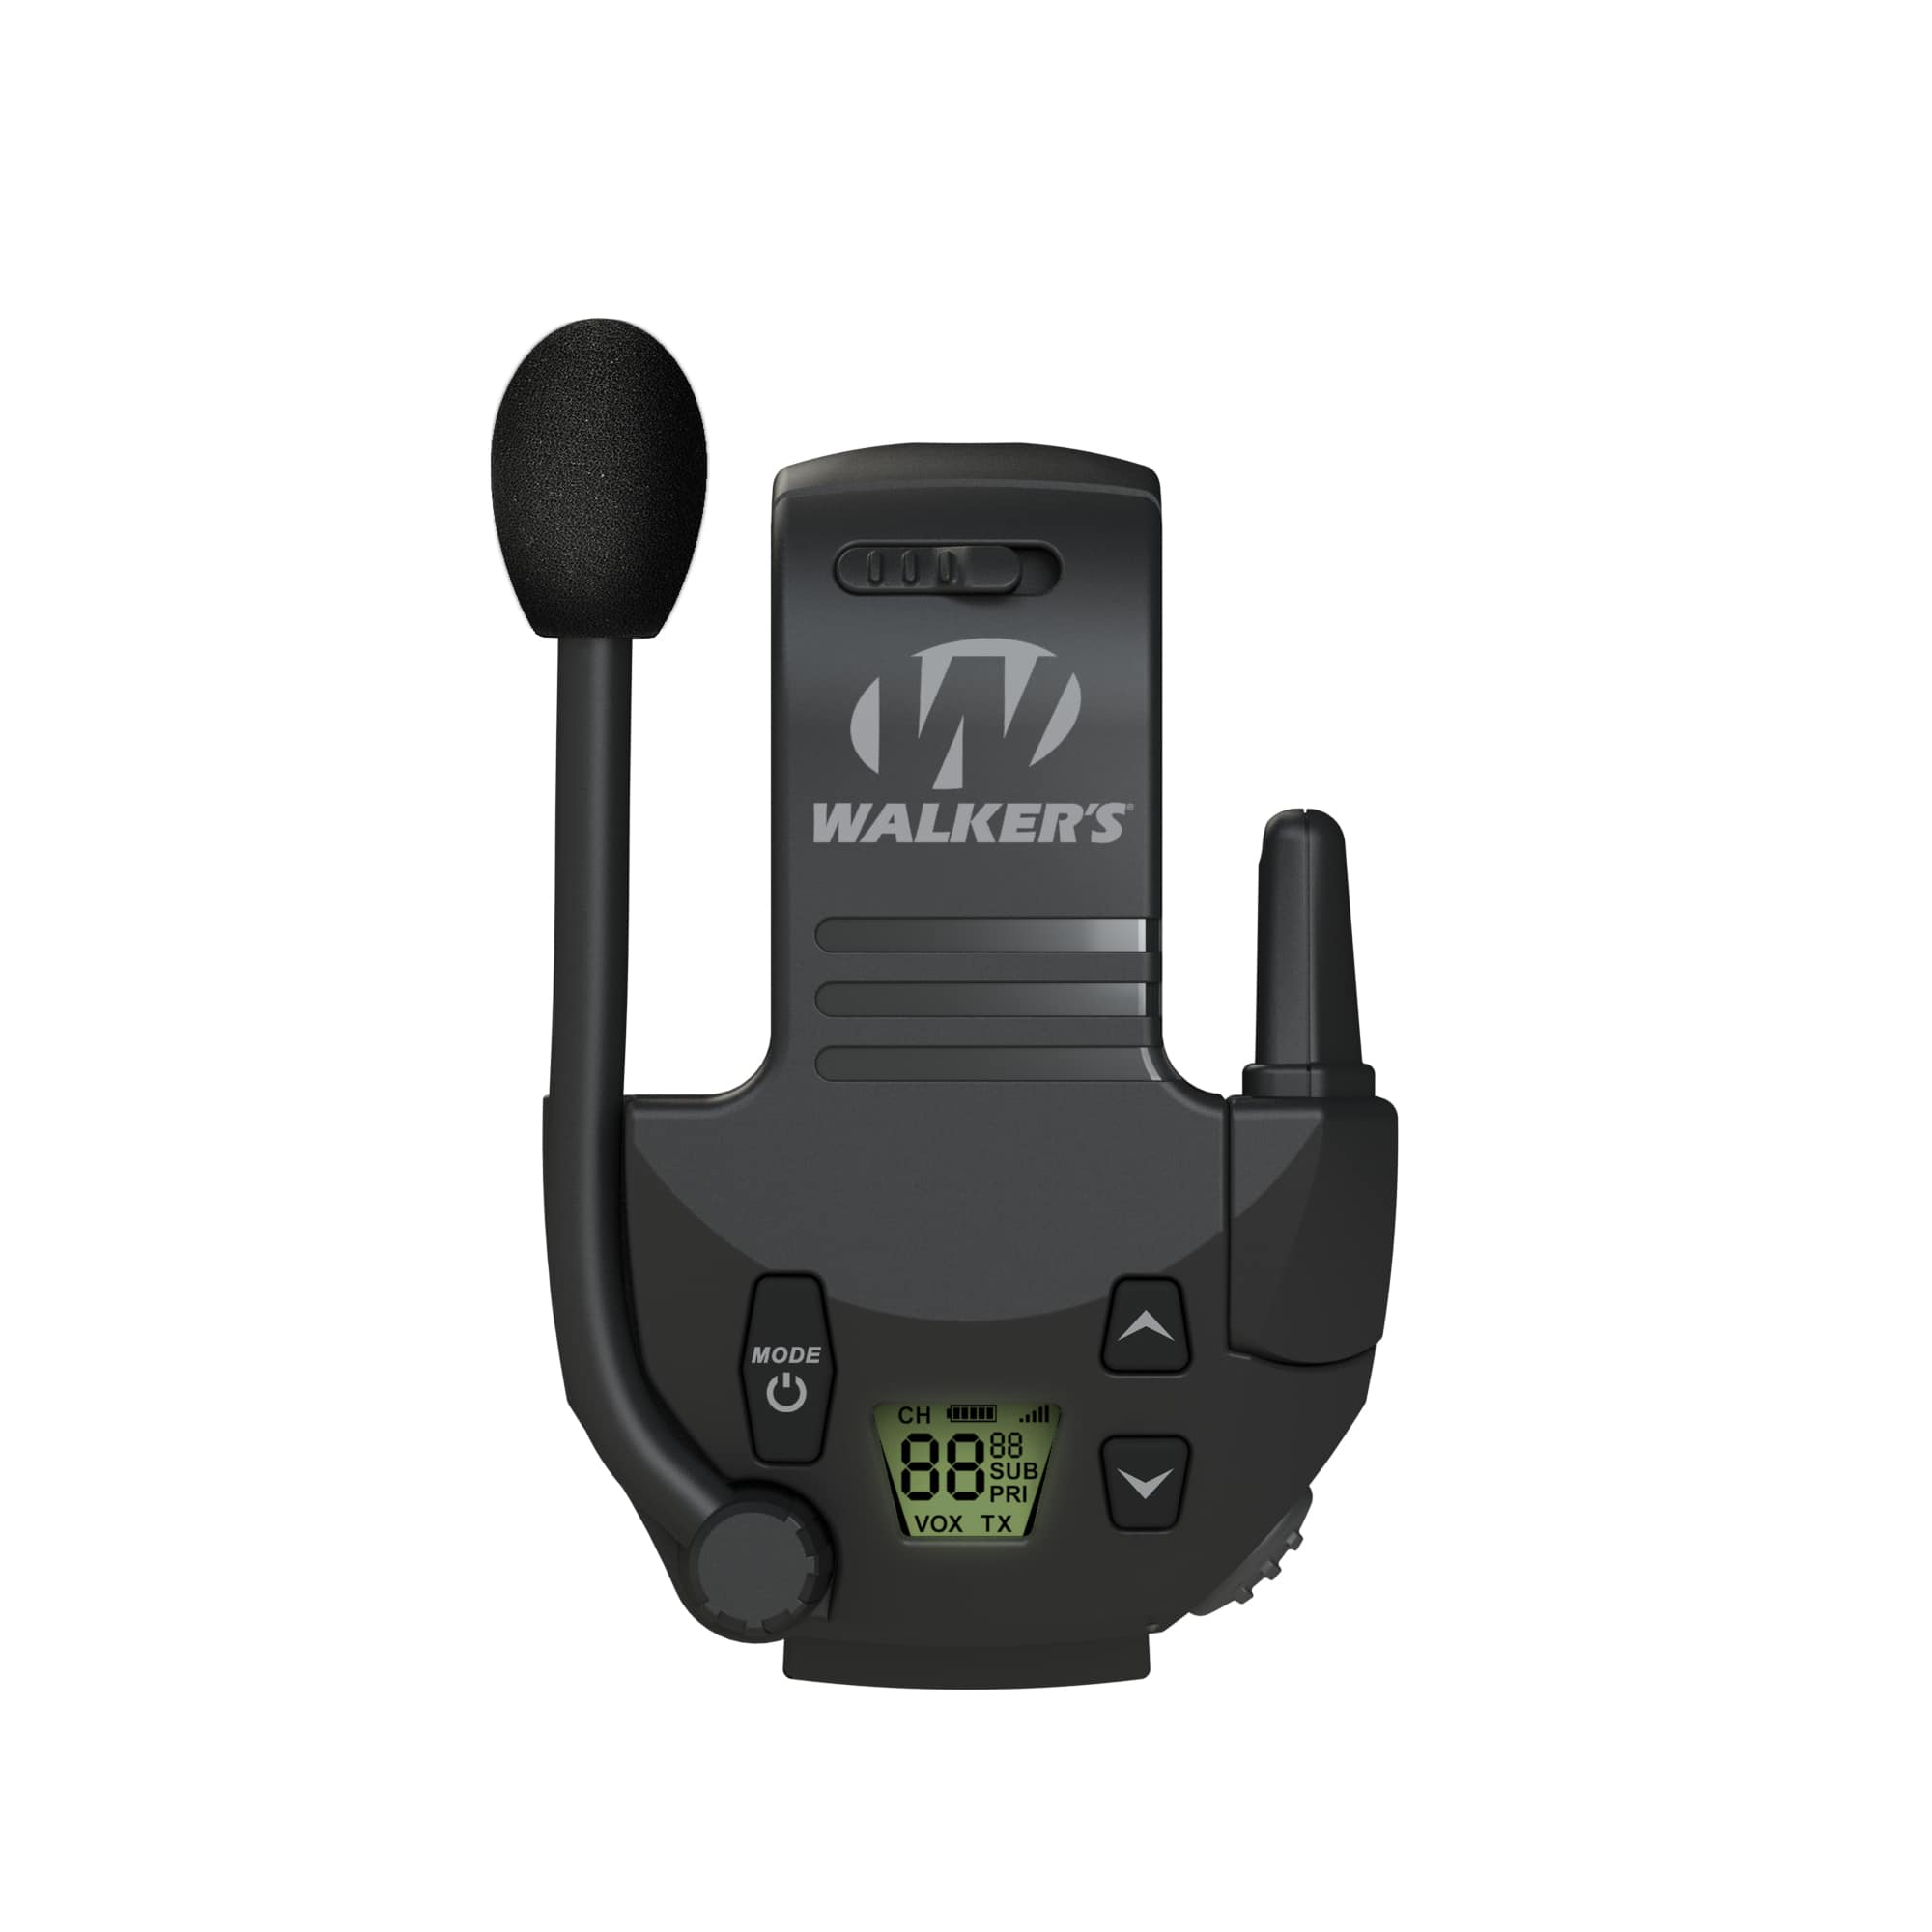  LEIMAXTE Walkie Talkie Auriculares para Baofeng BF-888s Kenwood  TK-3160 TK-3230 NX-300 Radio bidireccional con micrófono PTT auricular de  vigilancia, forma G : Electrónica